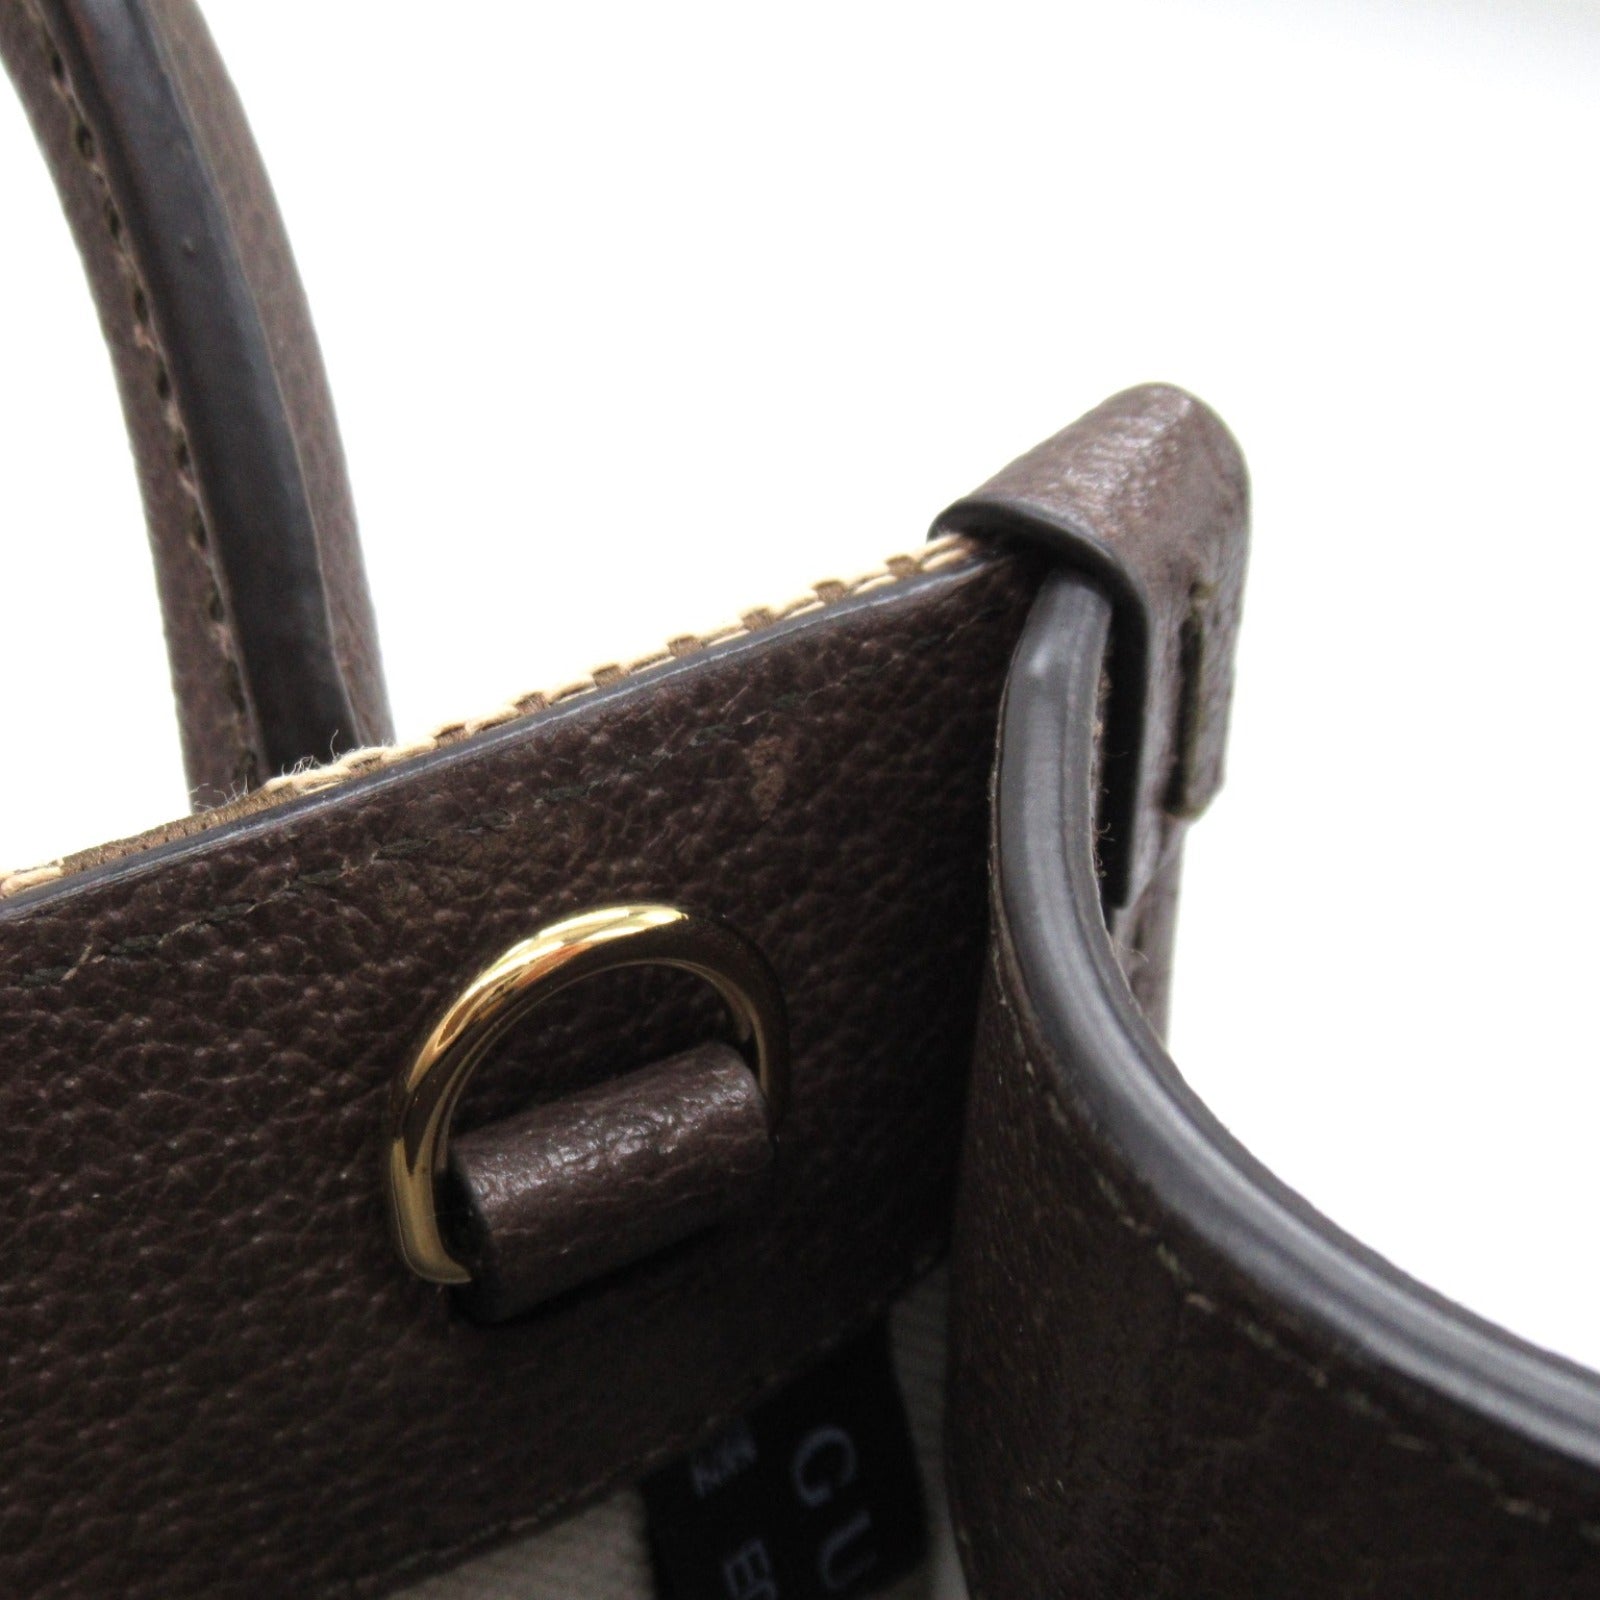 Gucci 2w Shoulder Shoulder Bag GG Canvas  Beige/Brown 699406